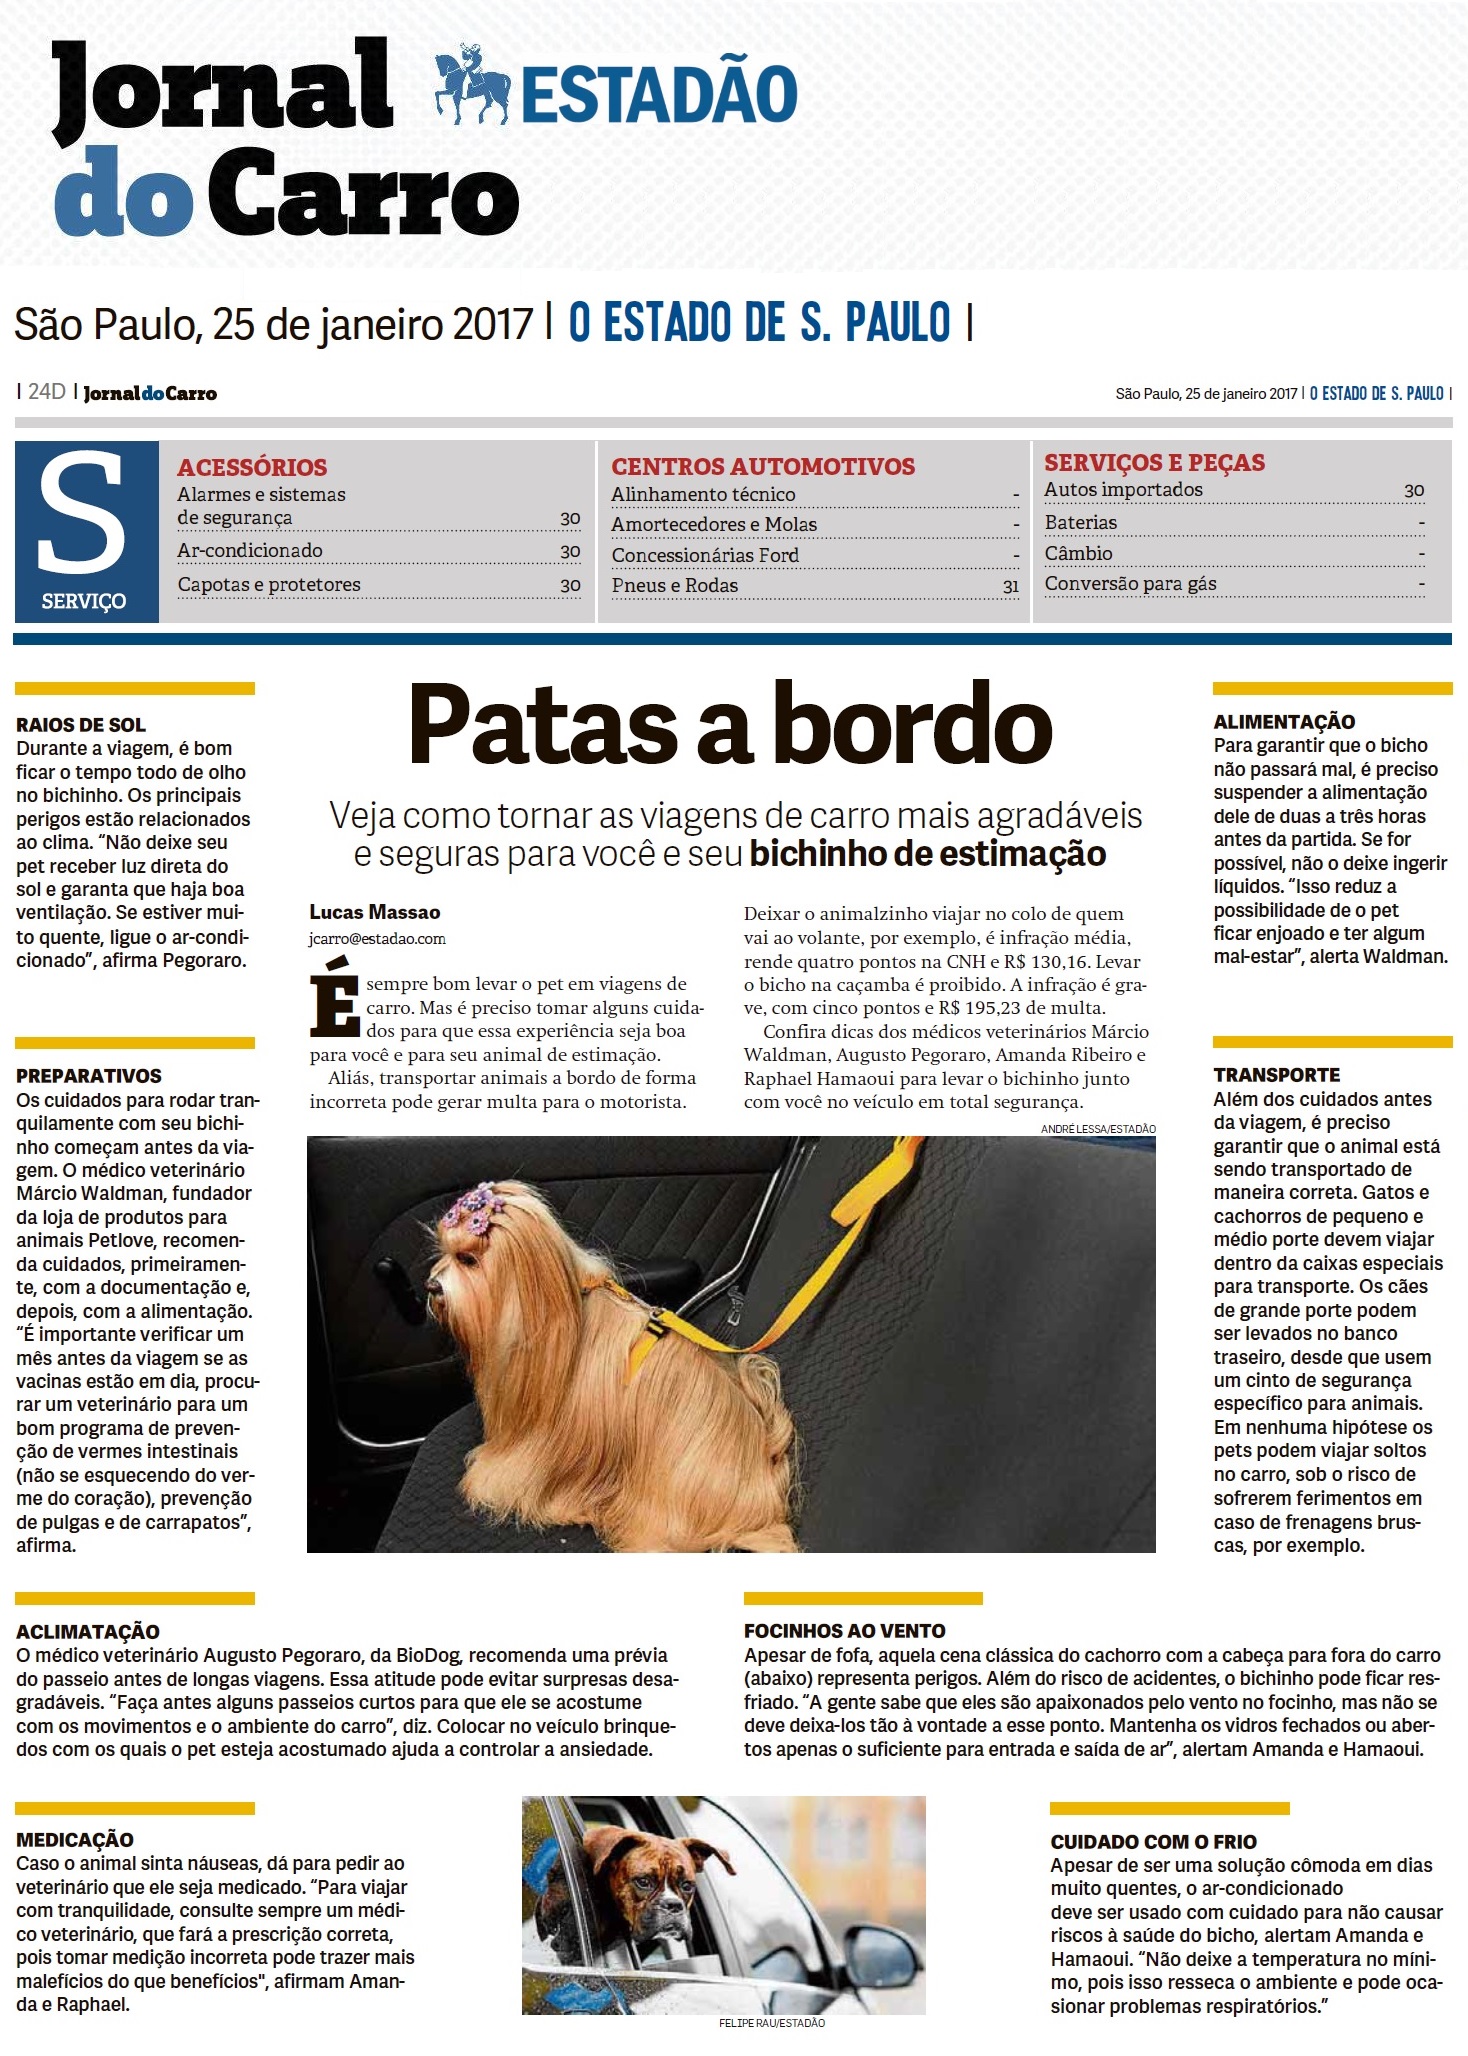 BIODOG NO JORNAL IMPRESSO ESTADÃO - JORNAL DO CARRO - 25.01.2017